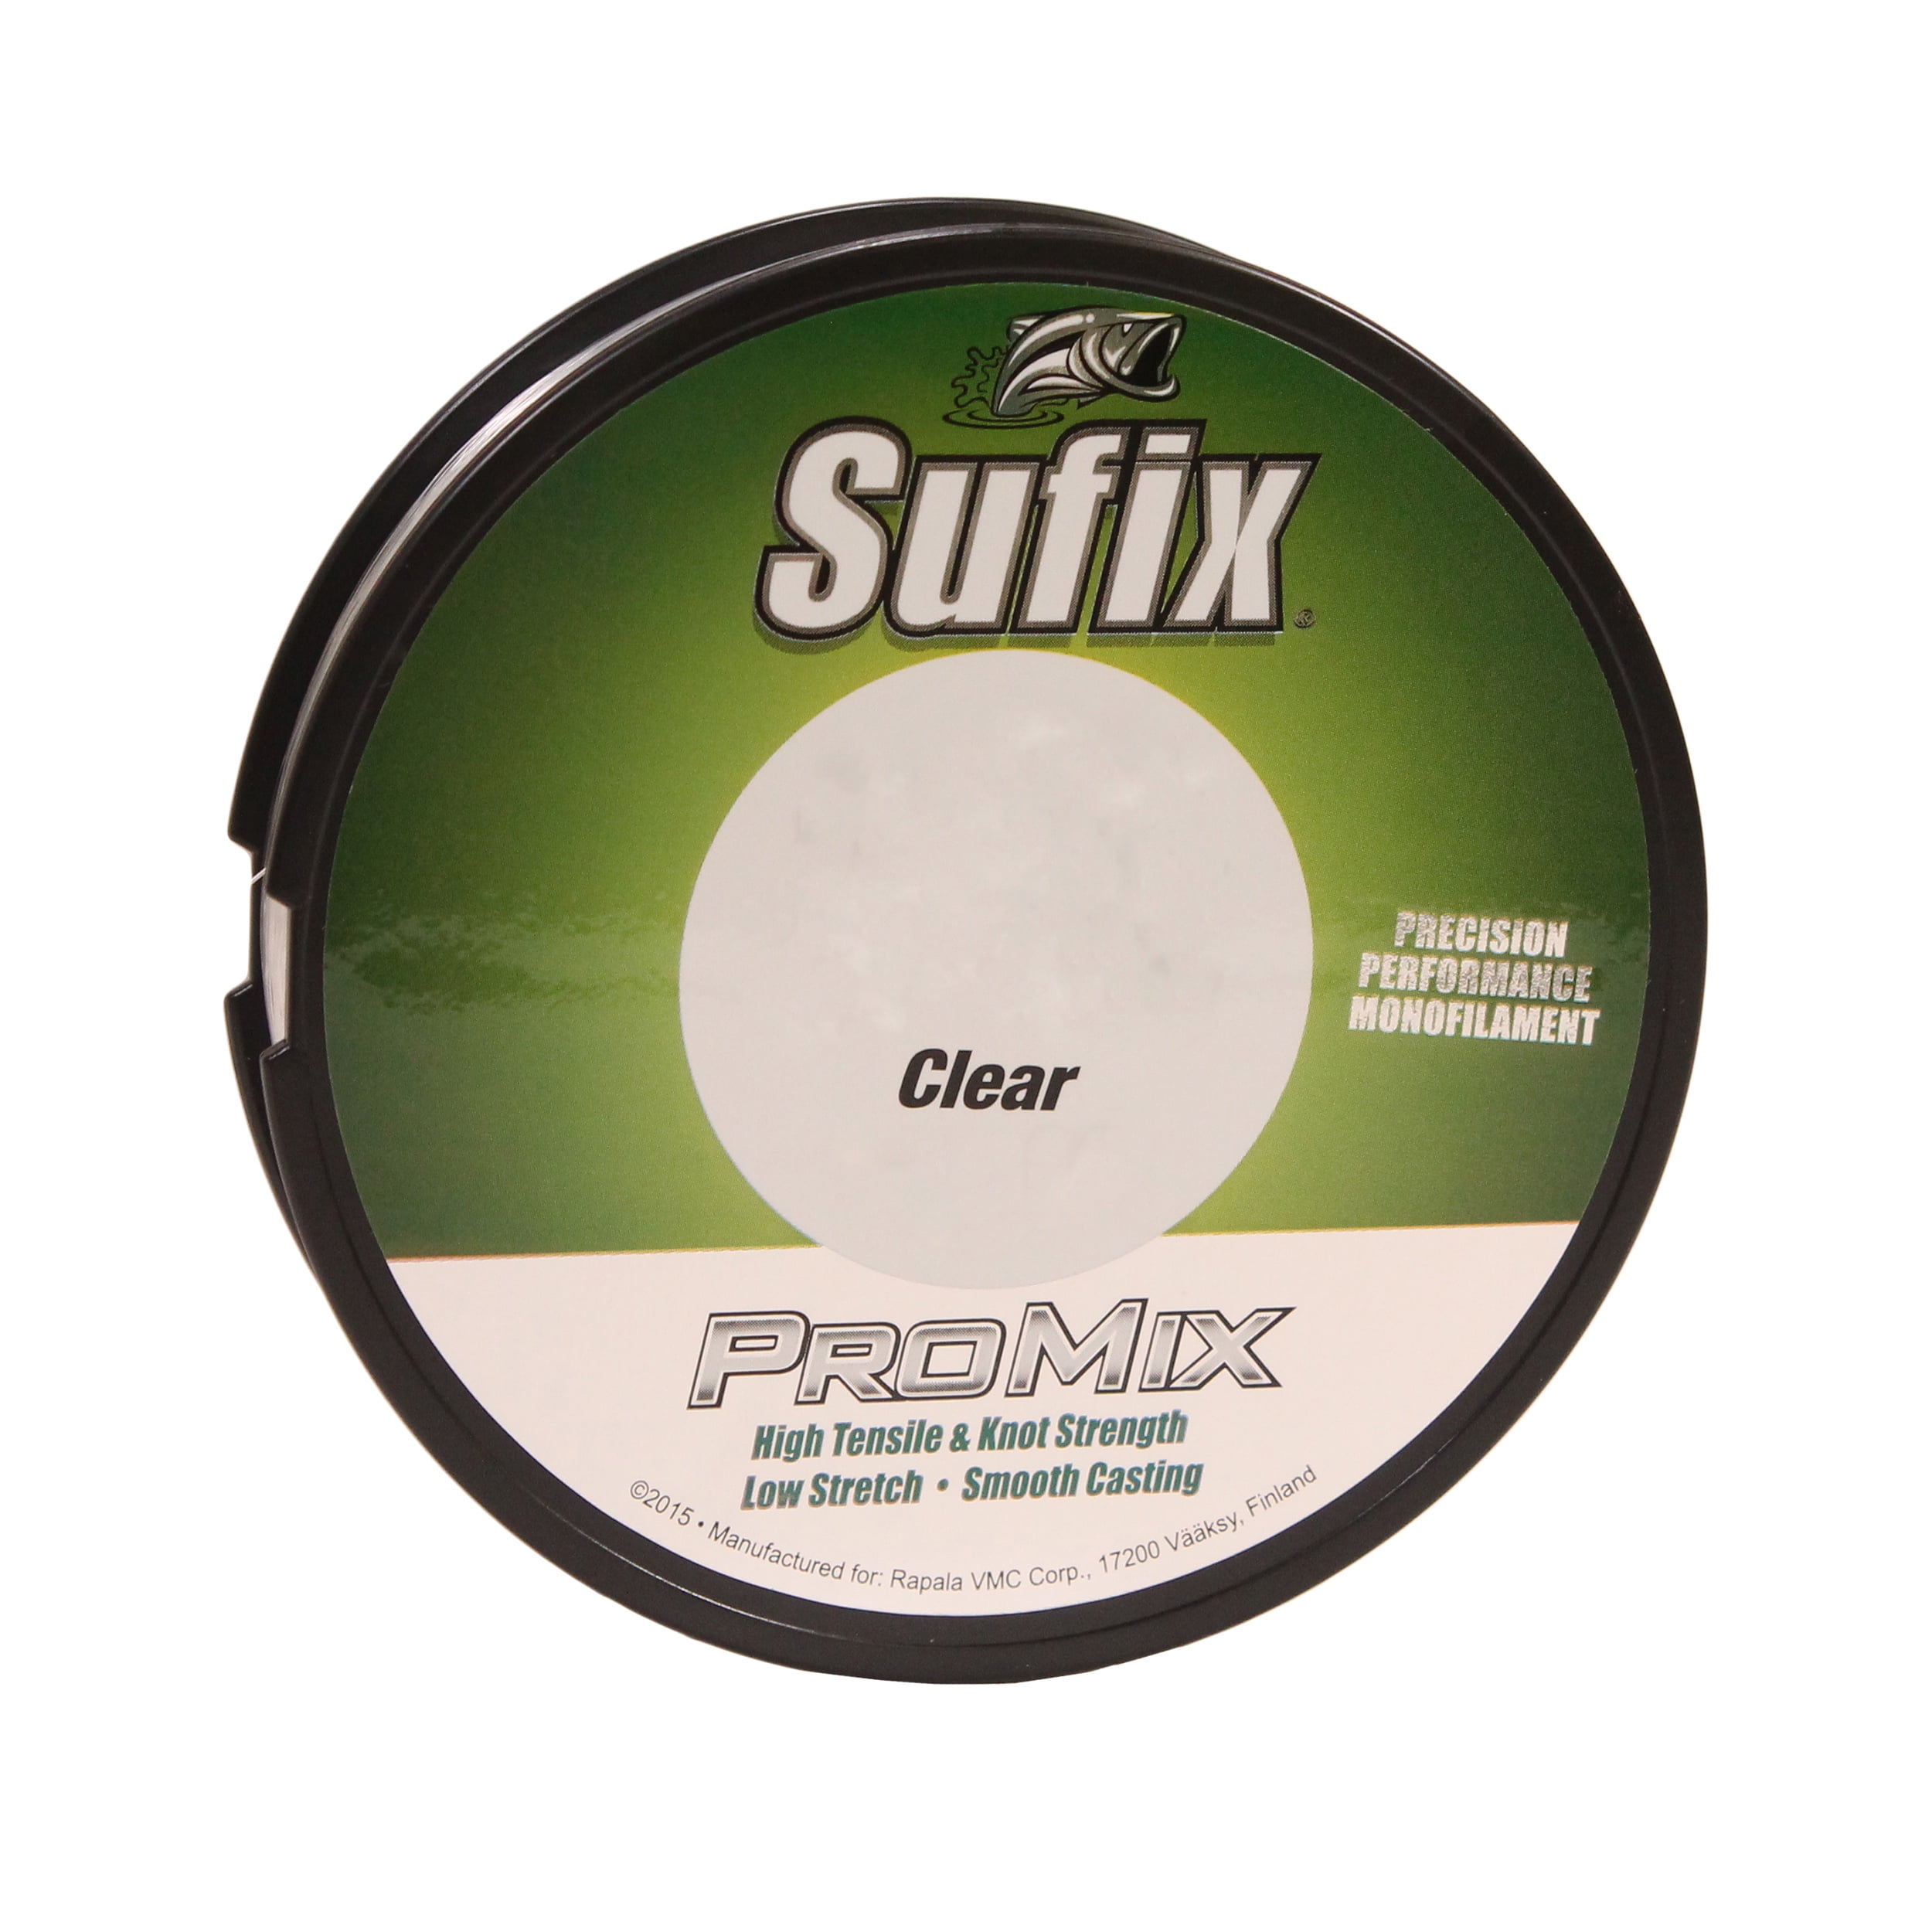 Sufix Promix 8 lb Clear 330 yds